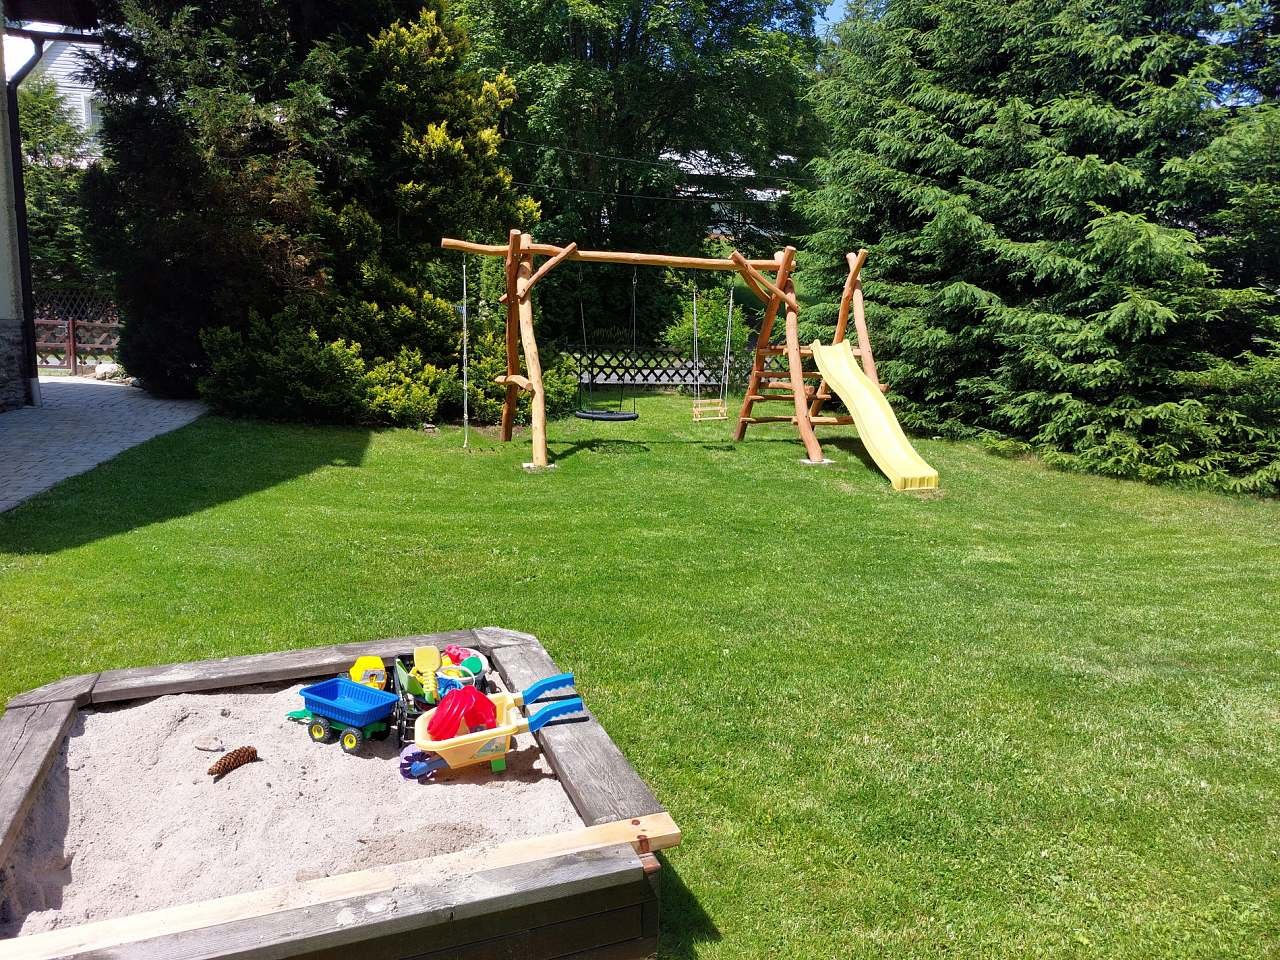 Swings, slide and sandpit for children